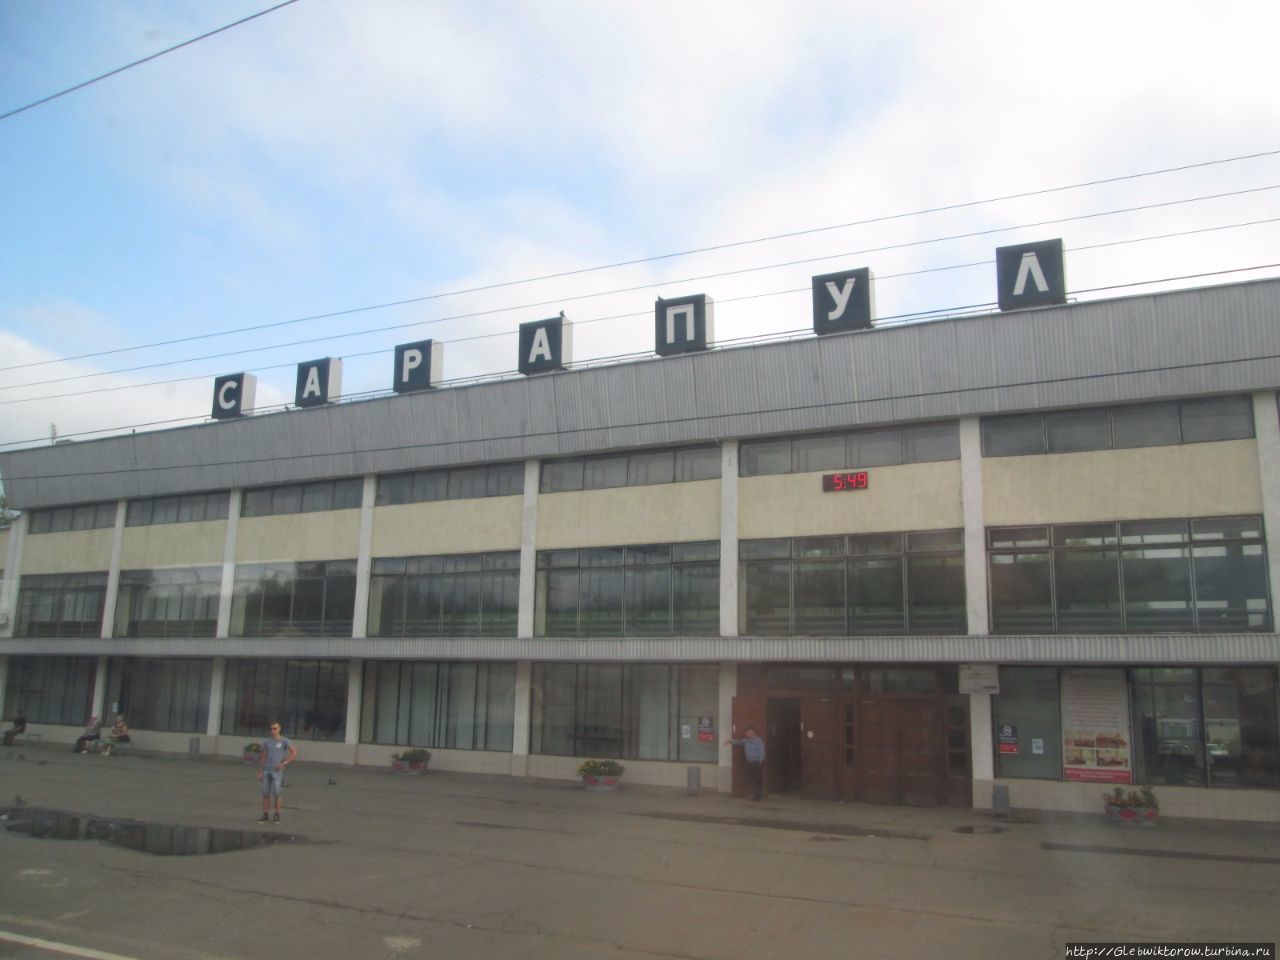 Поездка по Удмуртии на поезде Удмуртия, Россия